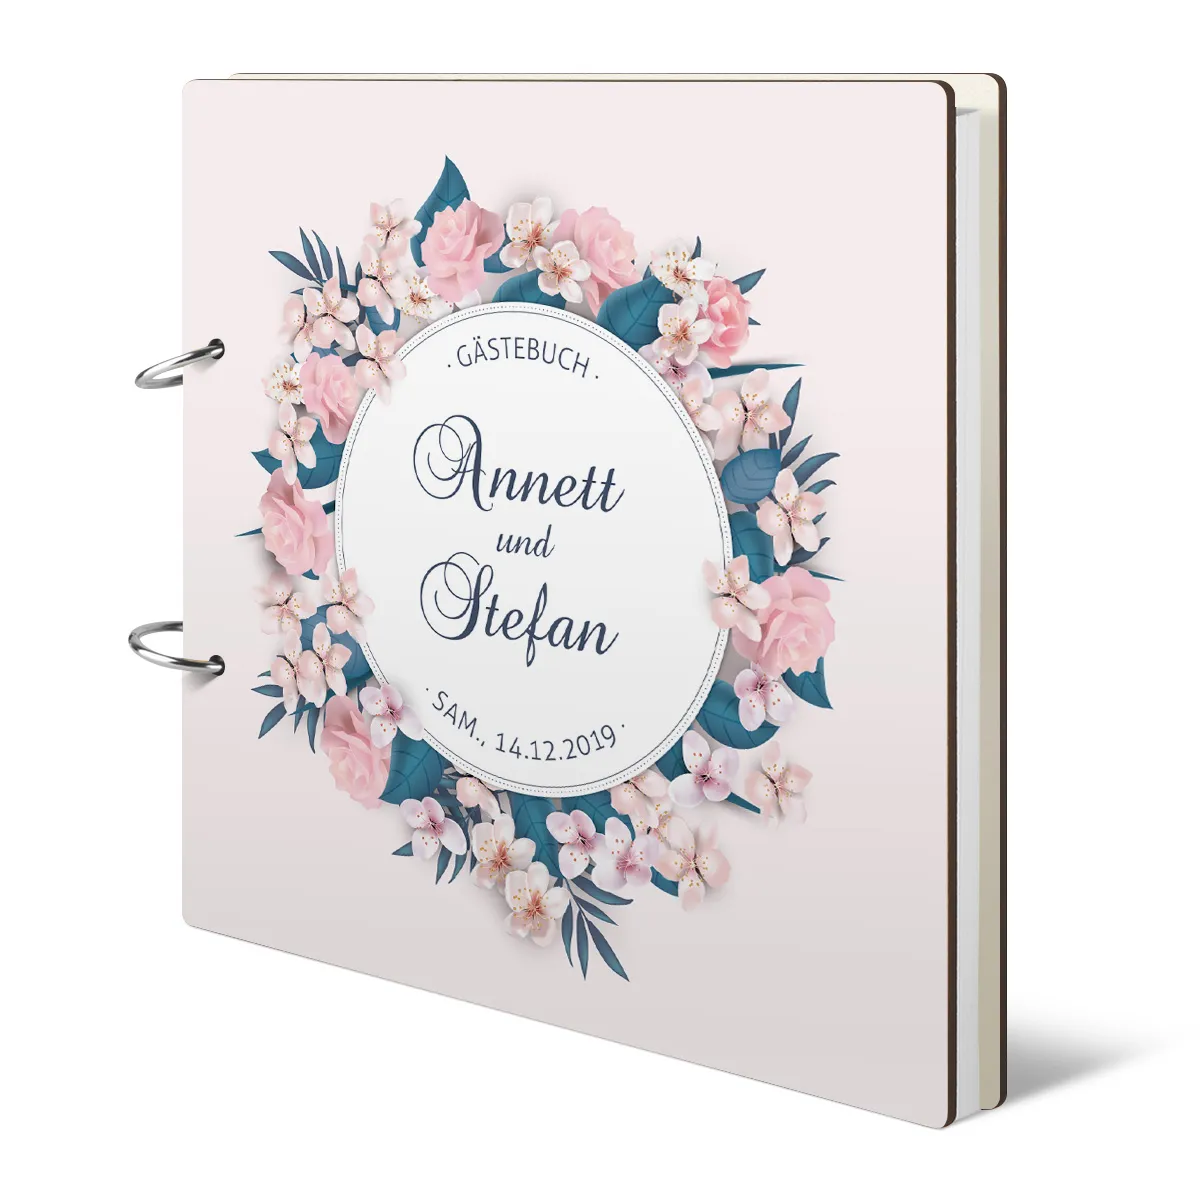 Personalisiertes Holzcover Hochzeit Gästebuch - Blumen Romantik